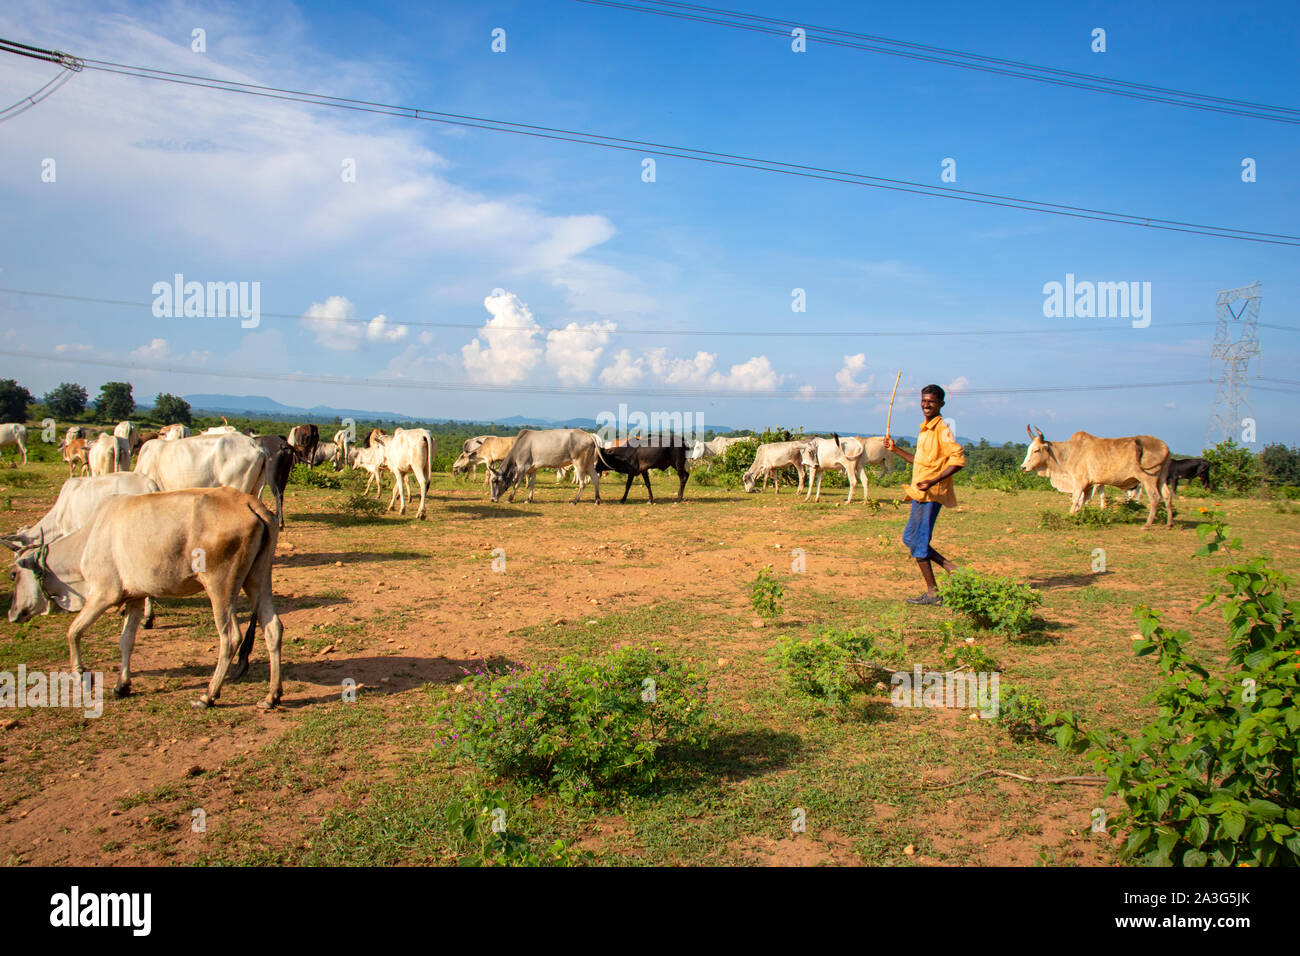 SIJHORA,Madhya Pradesh, Inde,septembre 18, 2019.Le berger, le pâturage, les vaches indiennes, dans le domaine est en train de rire avec un bâton dans sa main. Banque D'Images